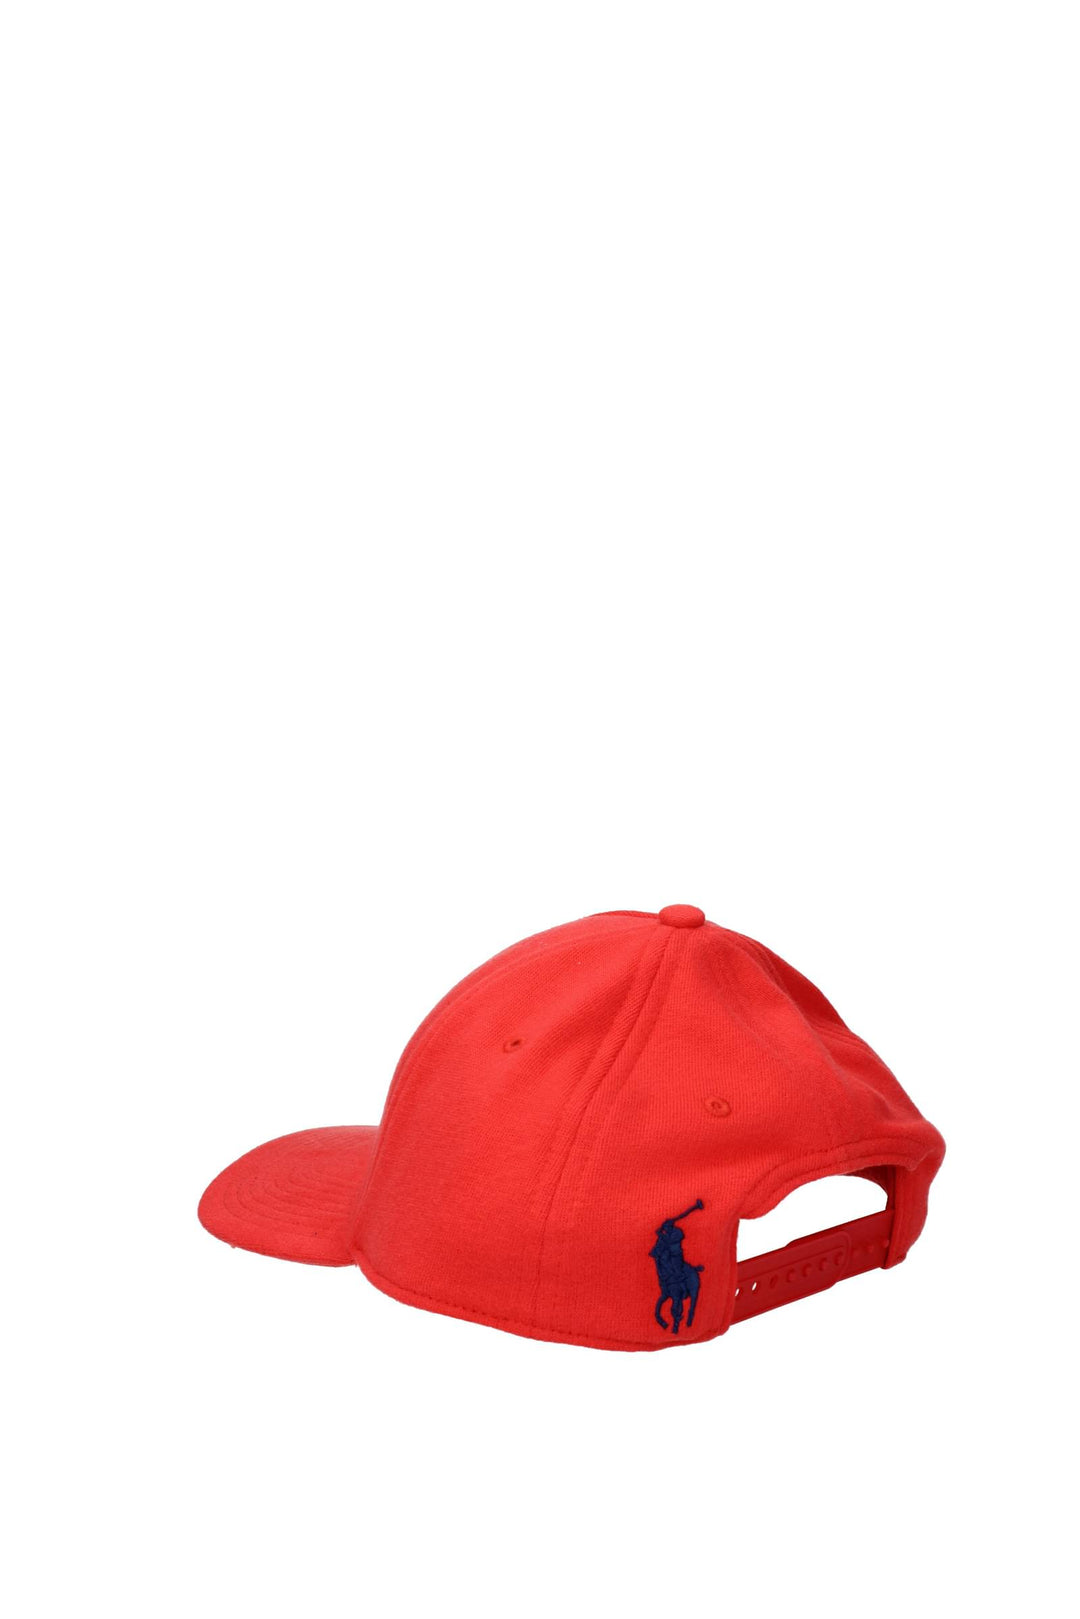 Cappelli Polo Cotone Rosso Rosso Brillante - Ralph Lauren - Uomo